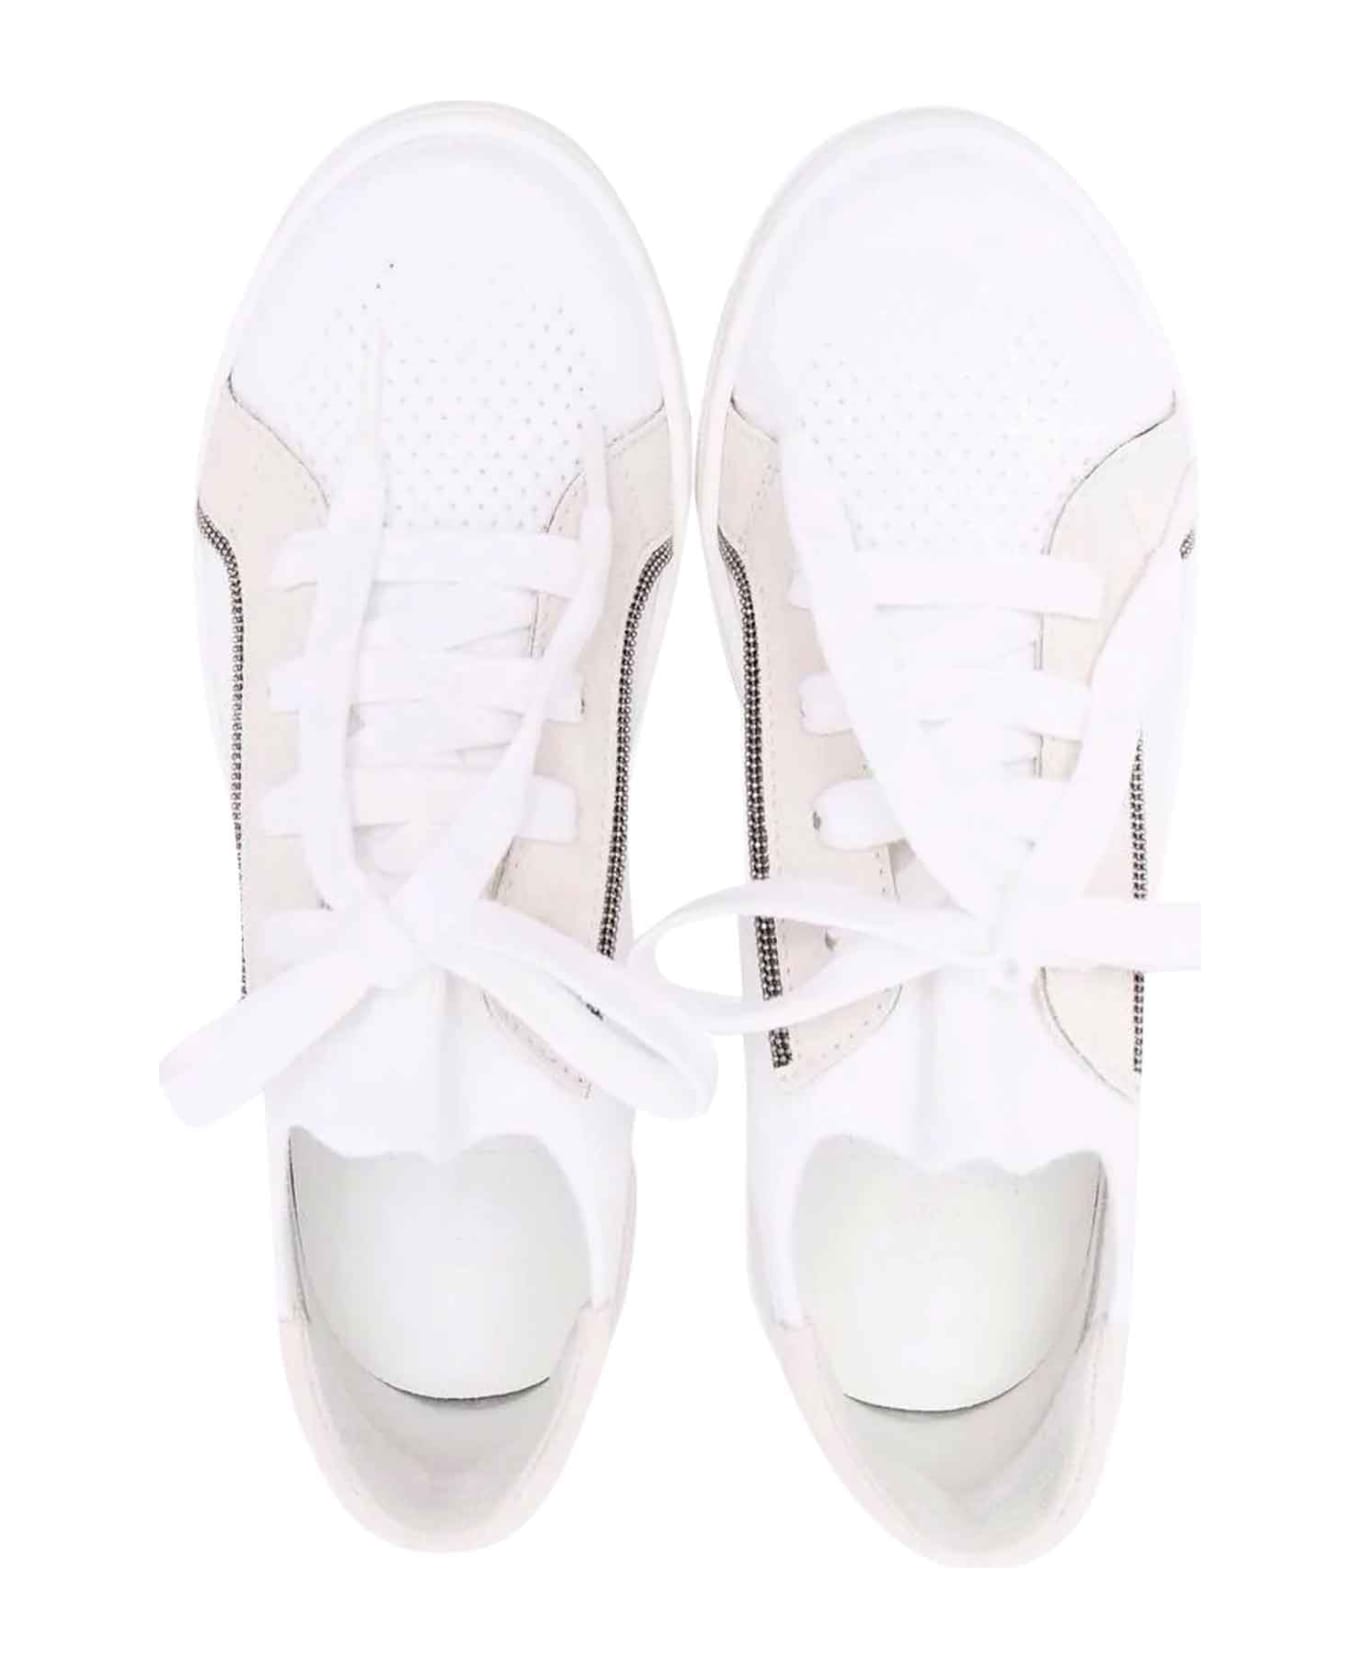 Brunello Cucinelli Boy White Sneakers - Bianco